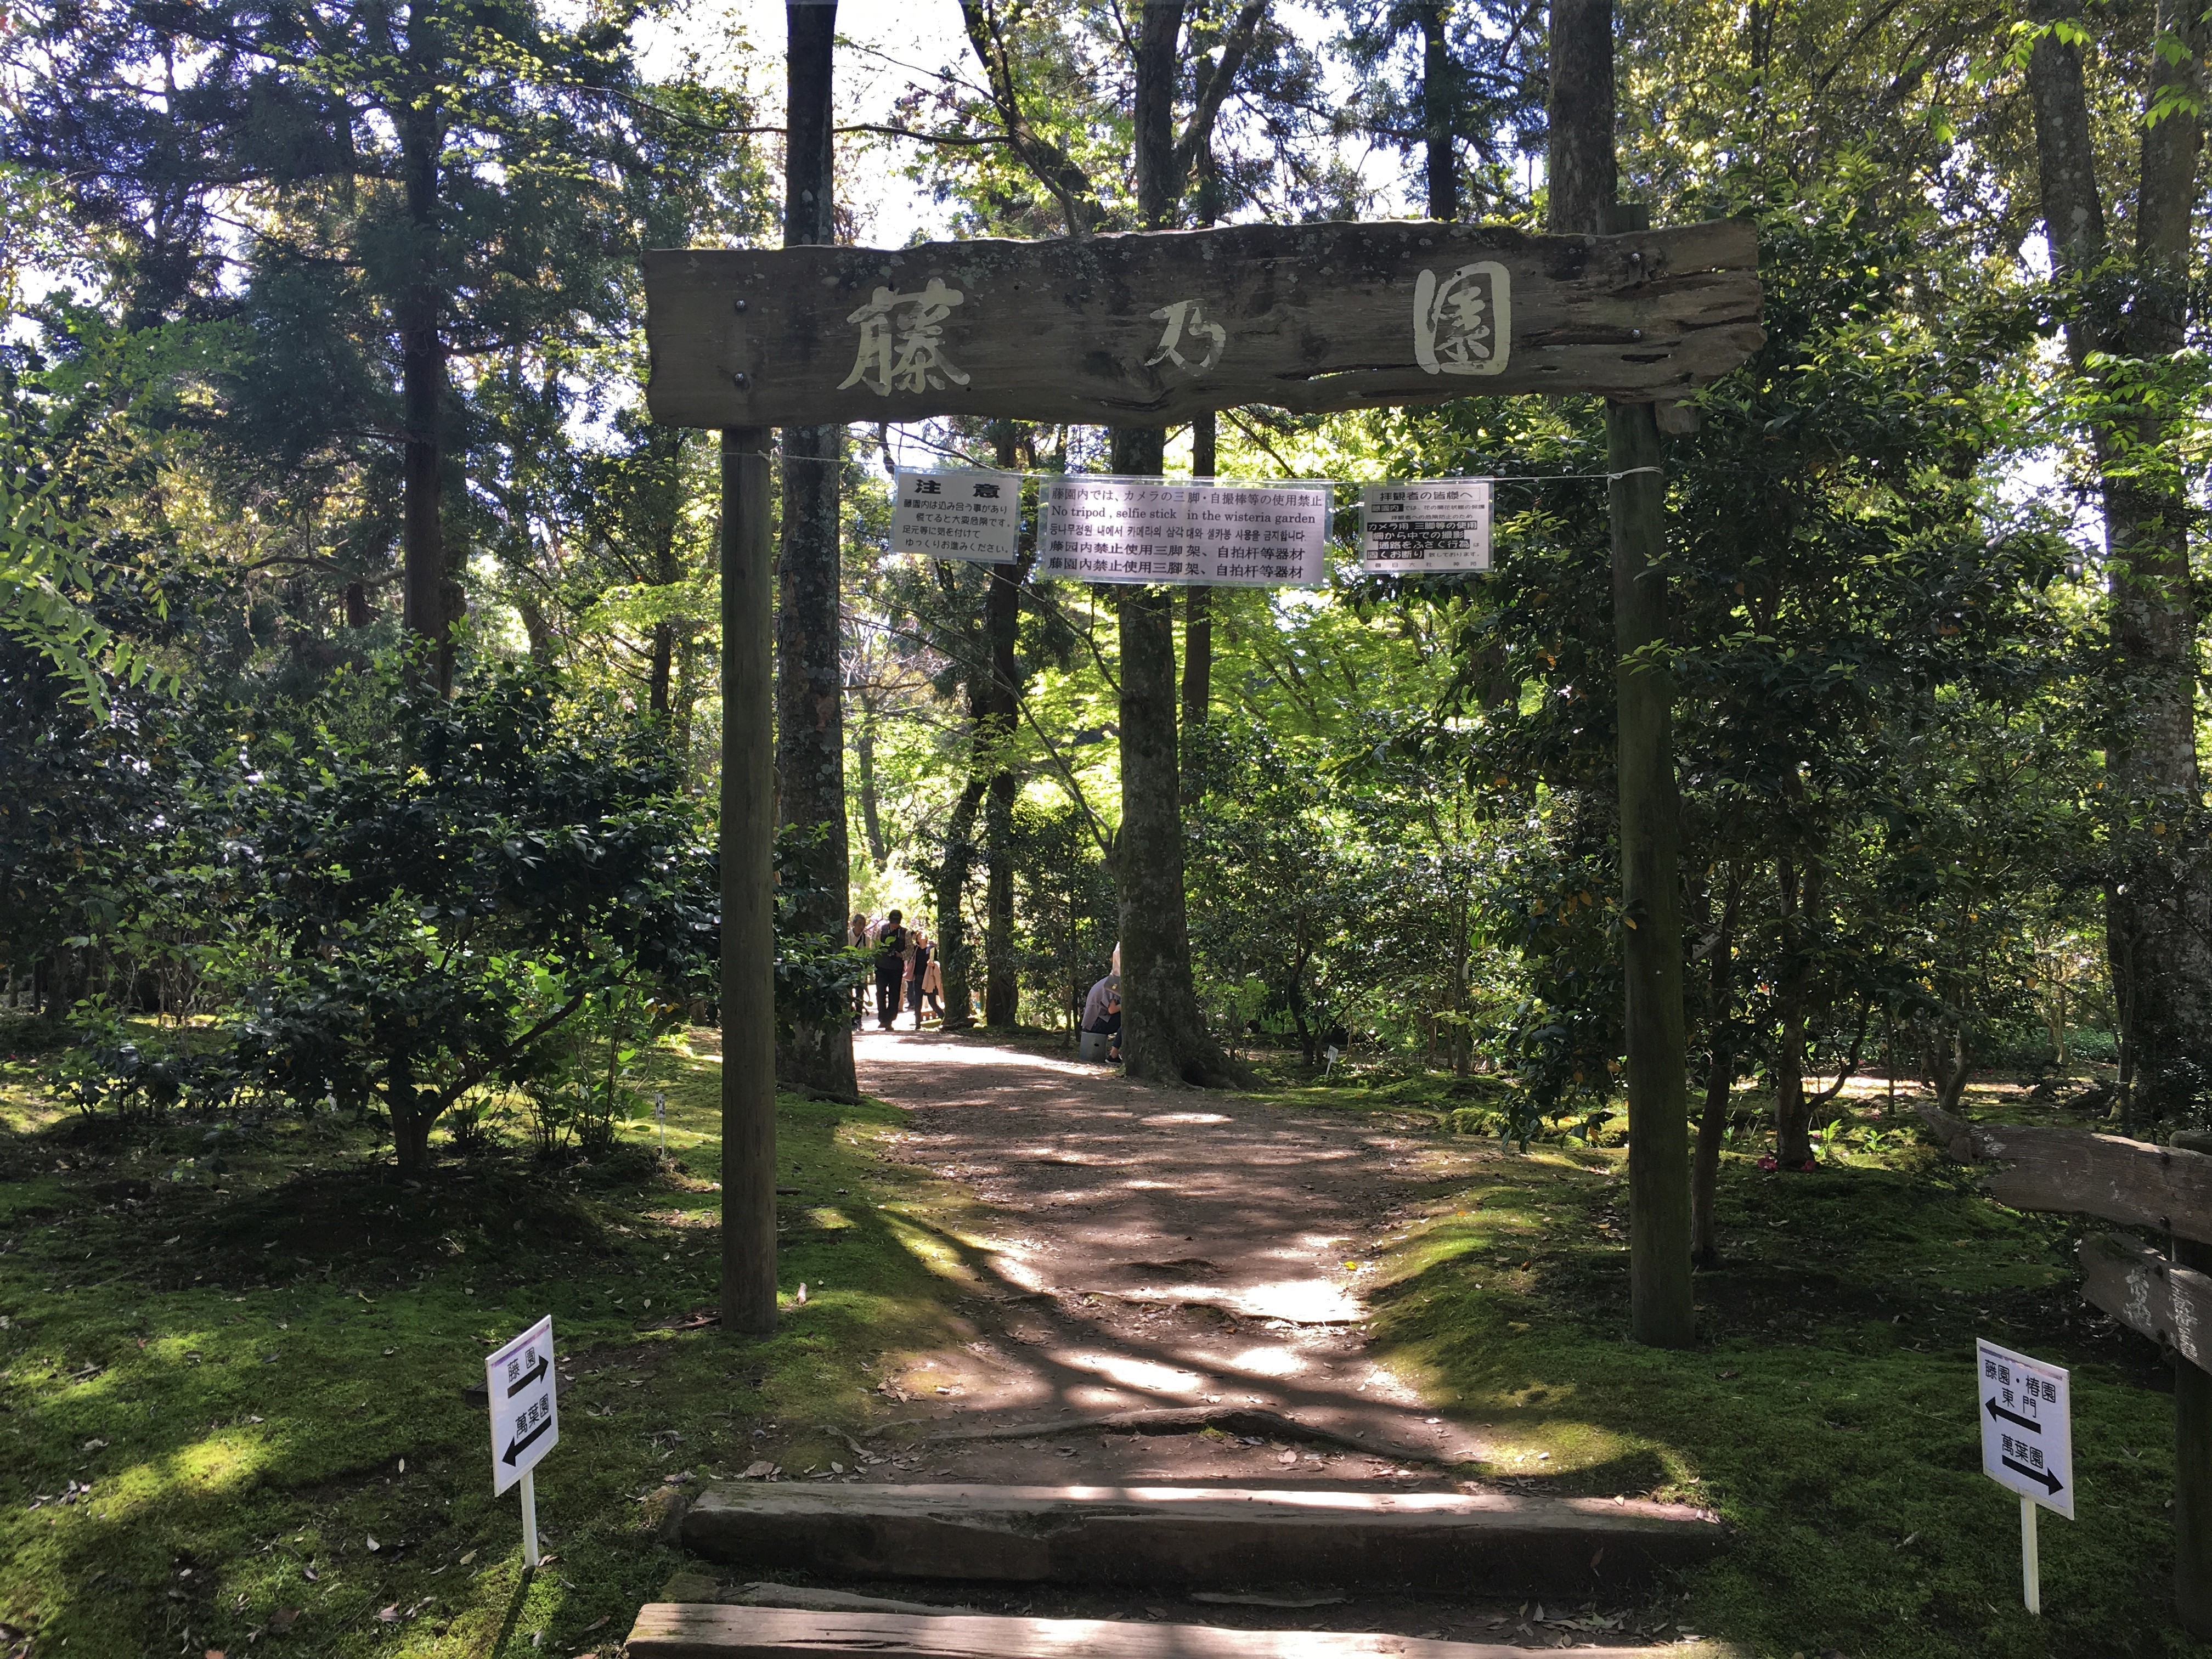 entrance to the wisteria garden in Manyo botanical garden